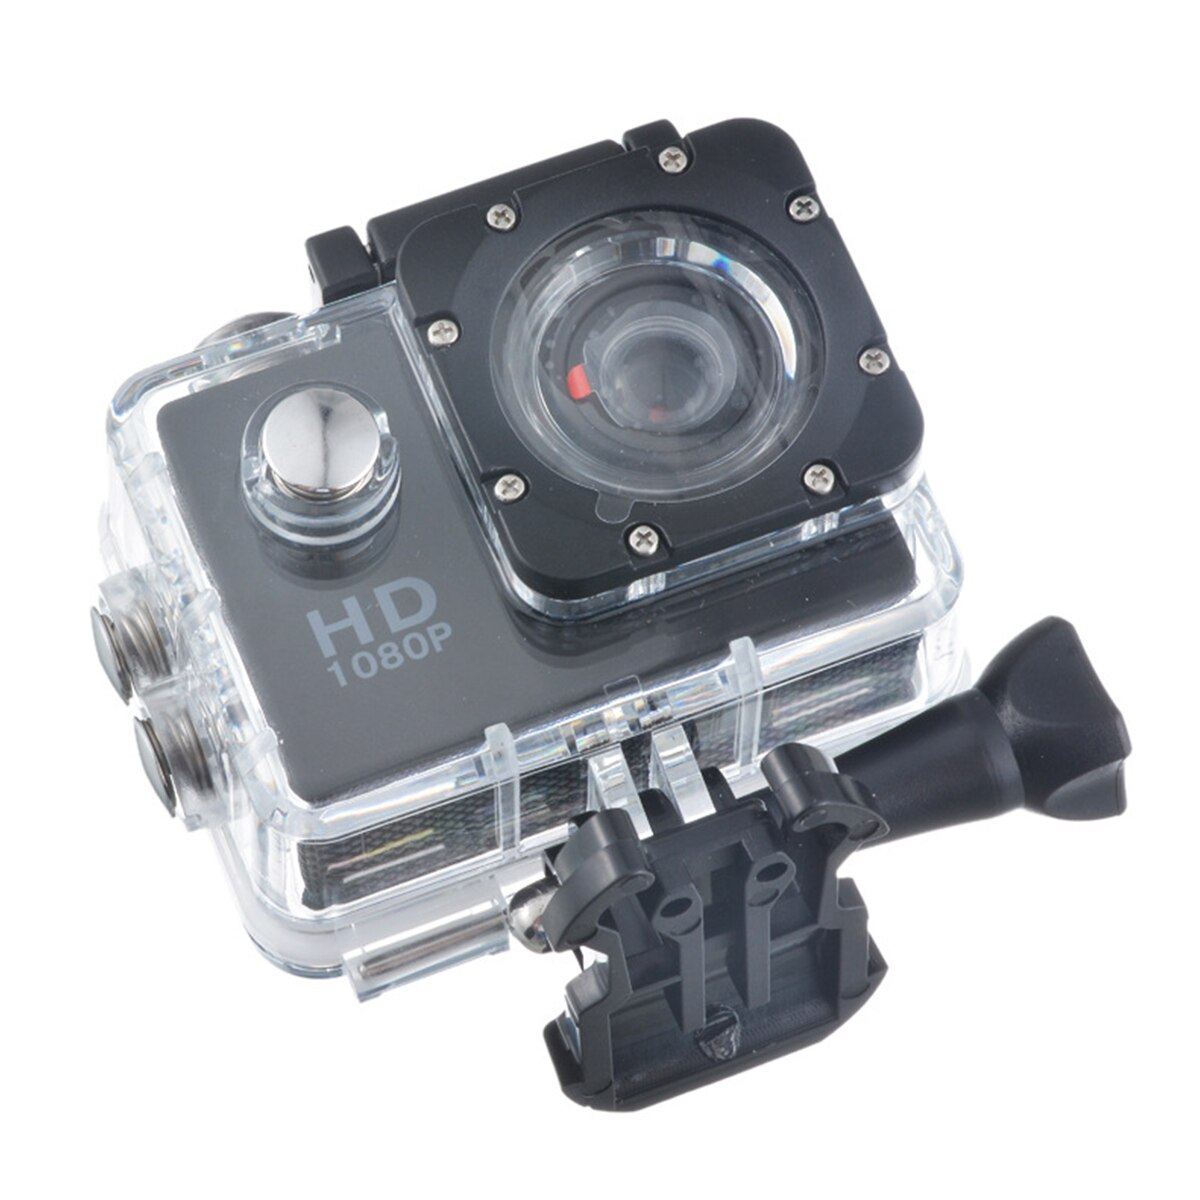 Owgyml udendørs sport action mini kamera vandtæt cam screen farve vandafvisende videoovervågning undersøisk kamera: Sort